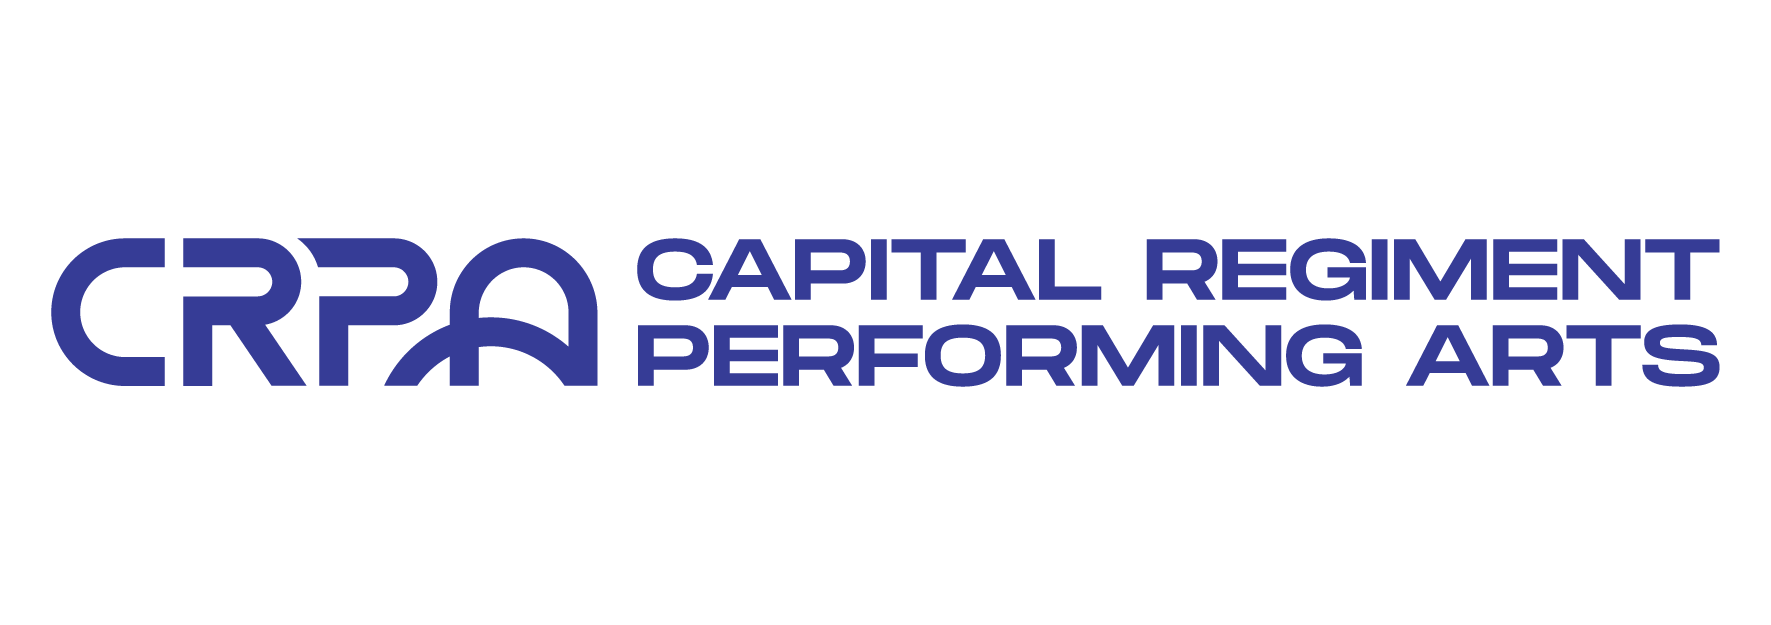 Capital Regiment Performing Arts PNG medium_horizontal blue (1)